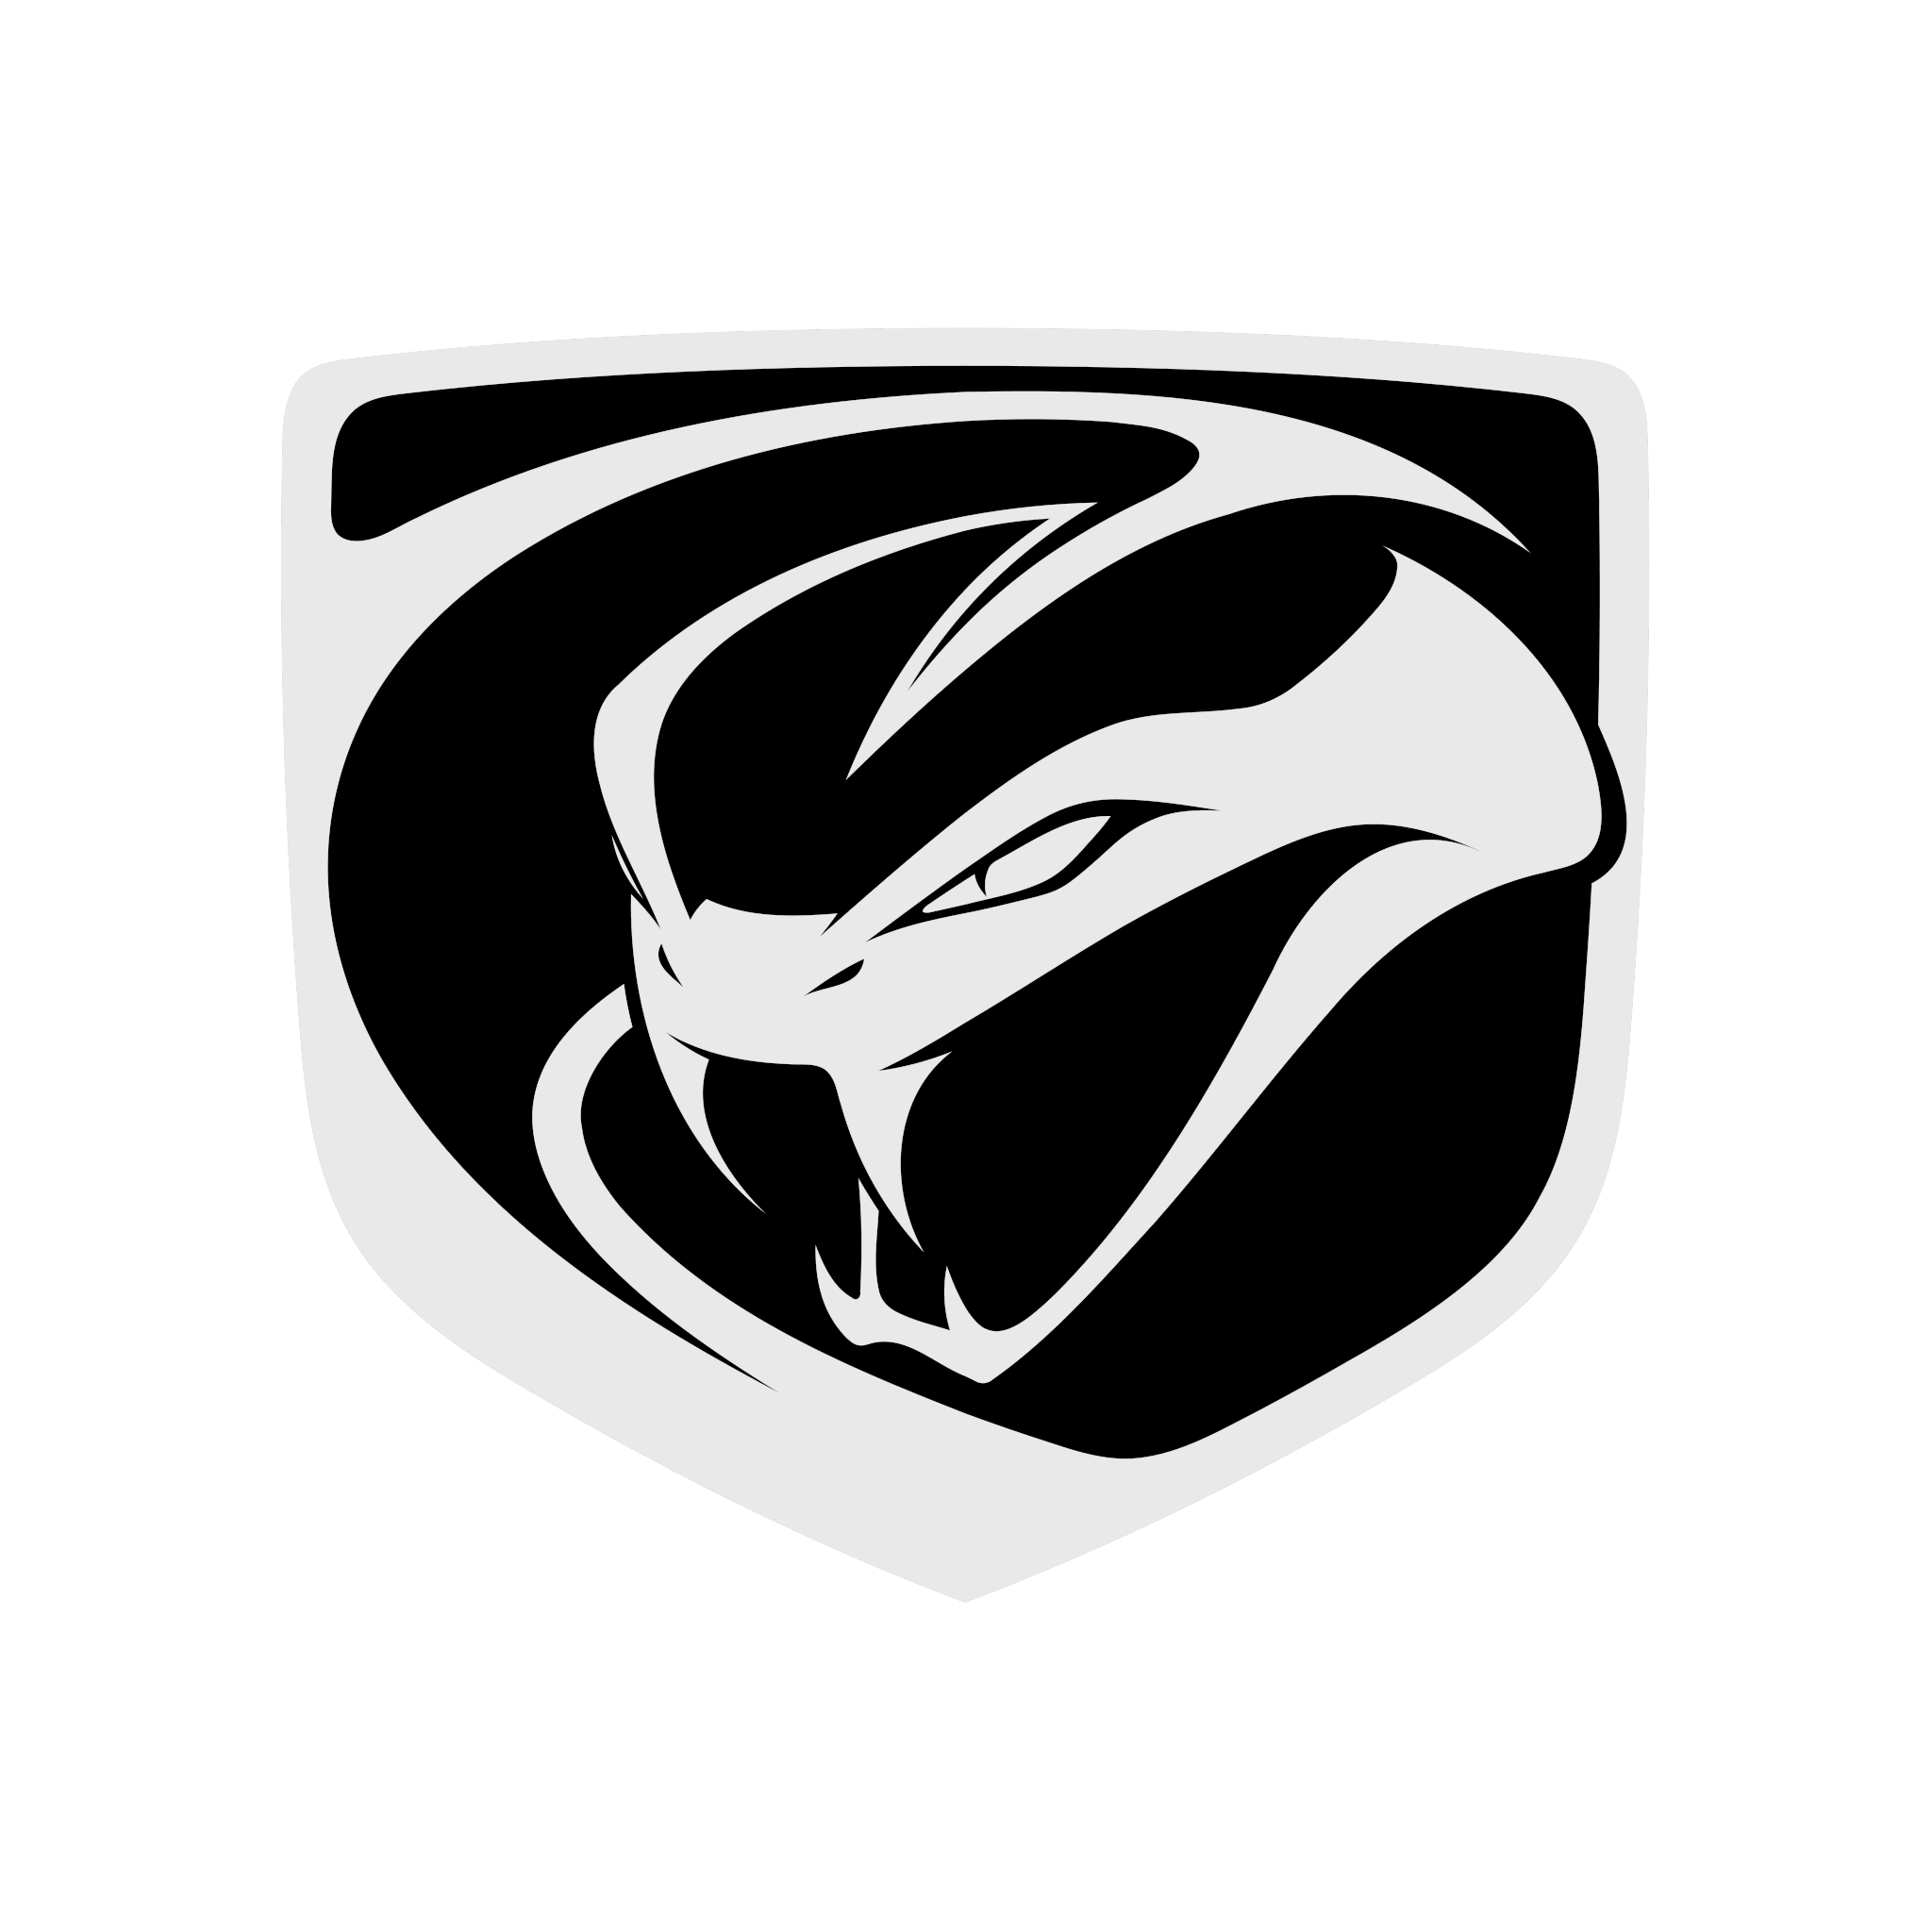 Viper logo.png